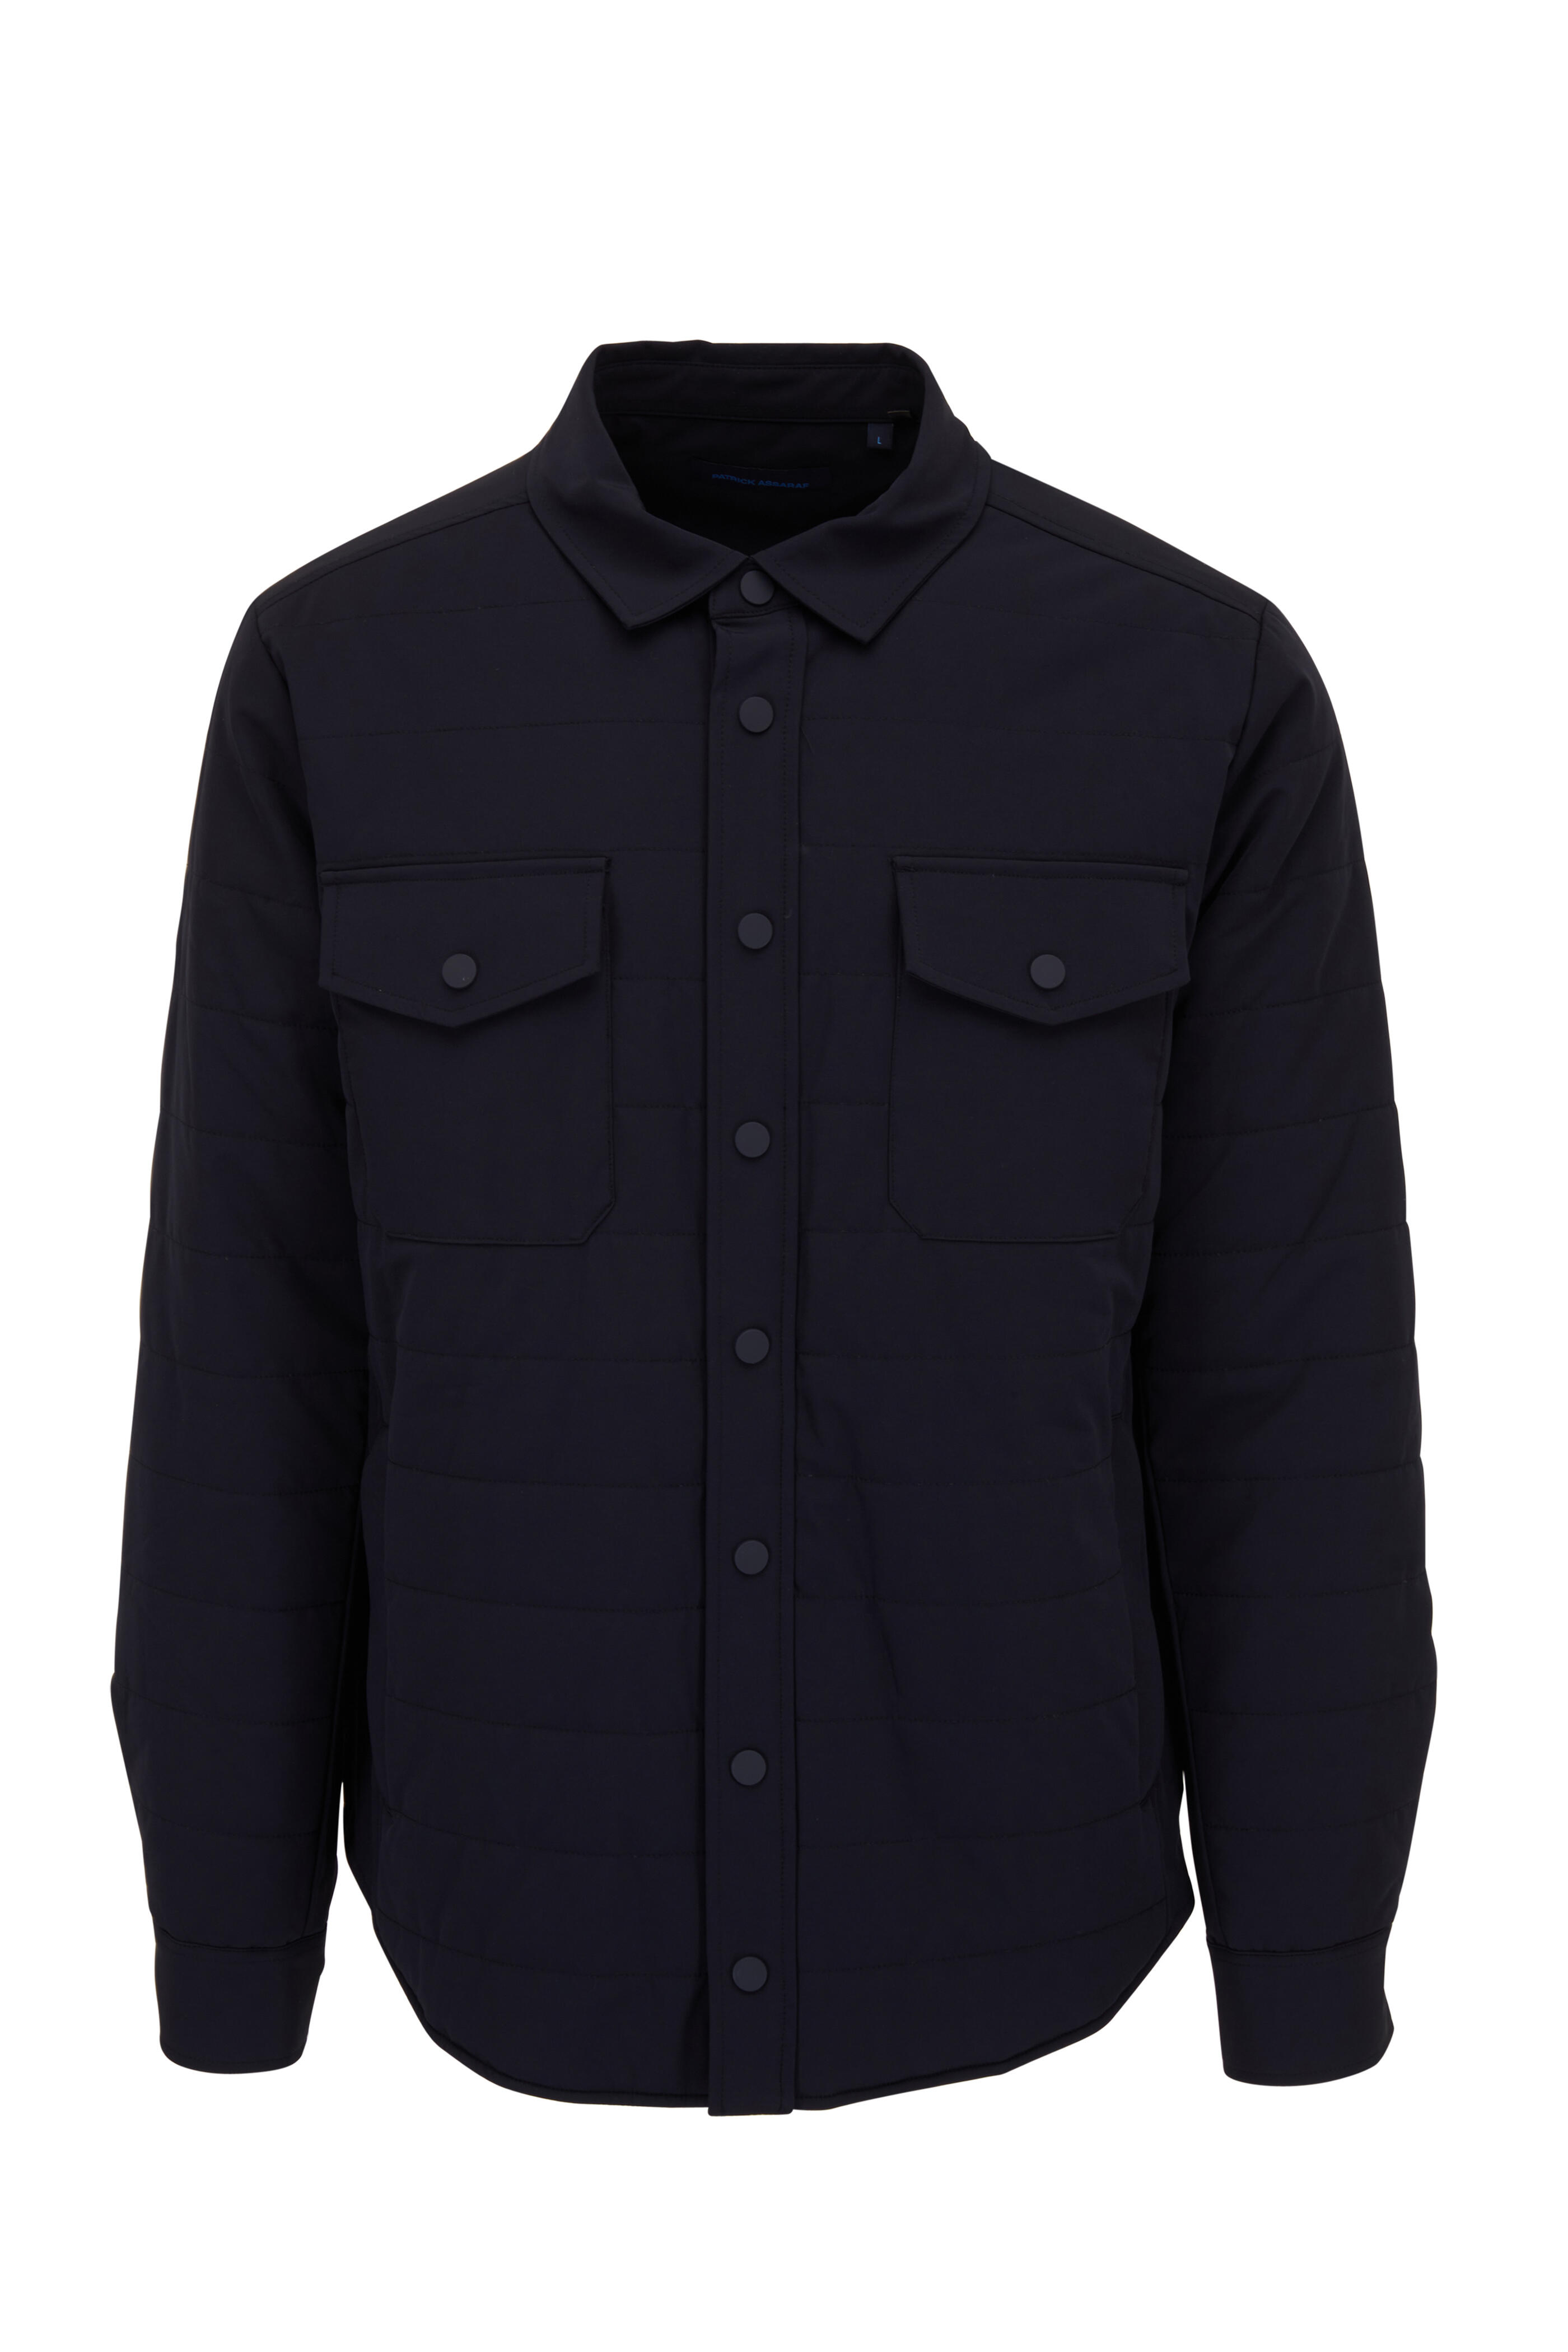 Patrick Assaraf - Dark Navy Quilted Shirt Jacket